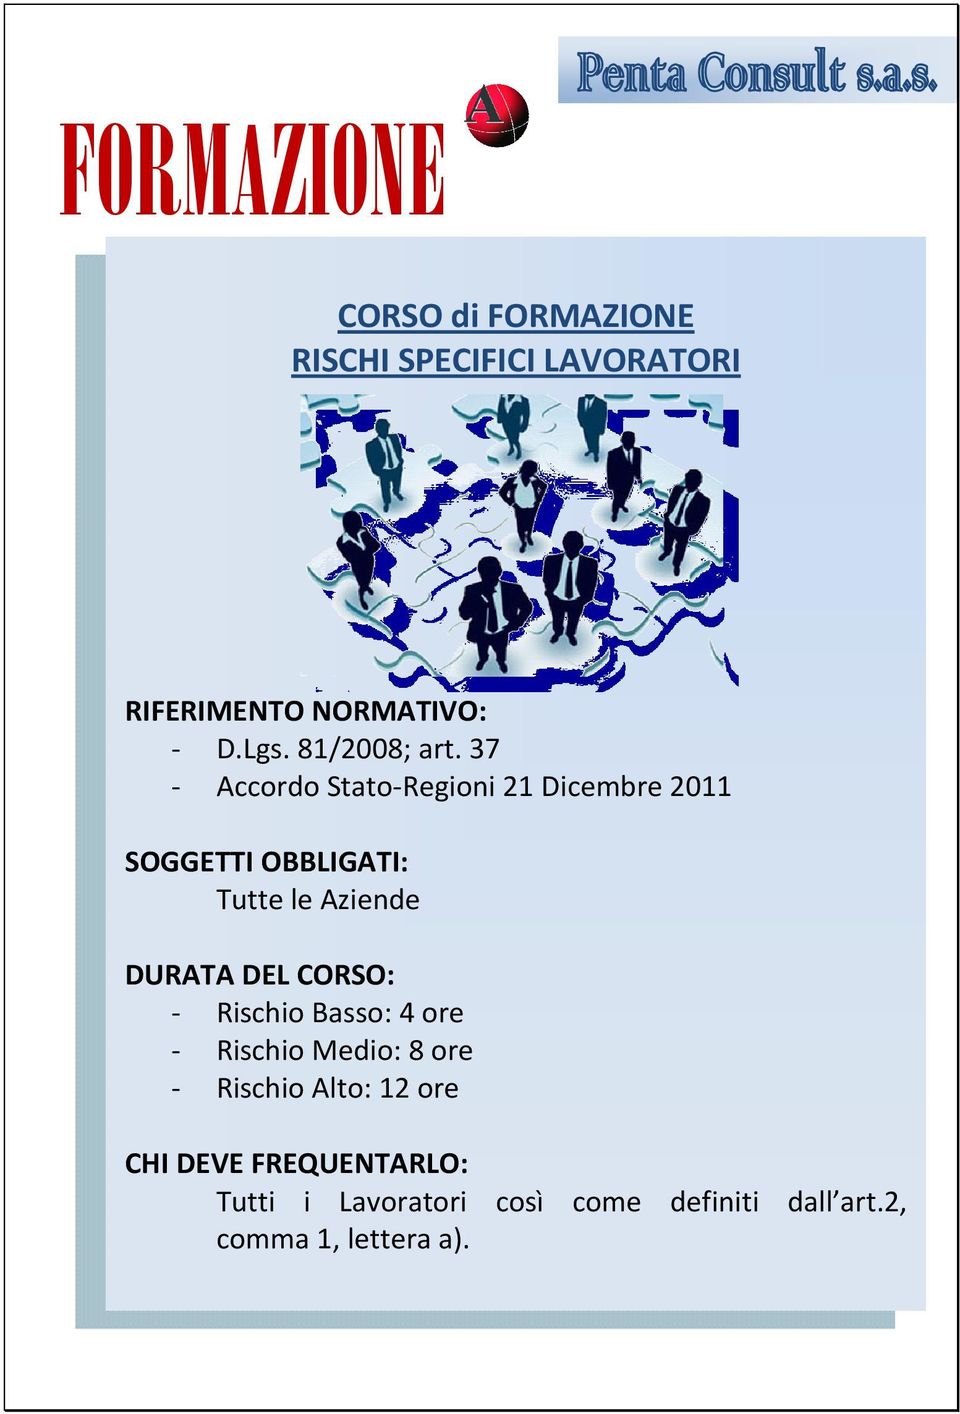 37 - Accordo Stato-Regioni 21 Dicembre 2011 SOGGETTI OBBLIGATI: Tutte le Aziende DURATA DEL